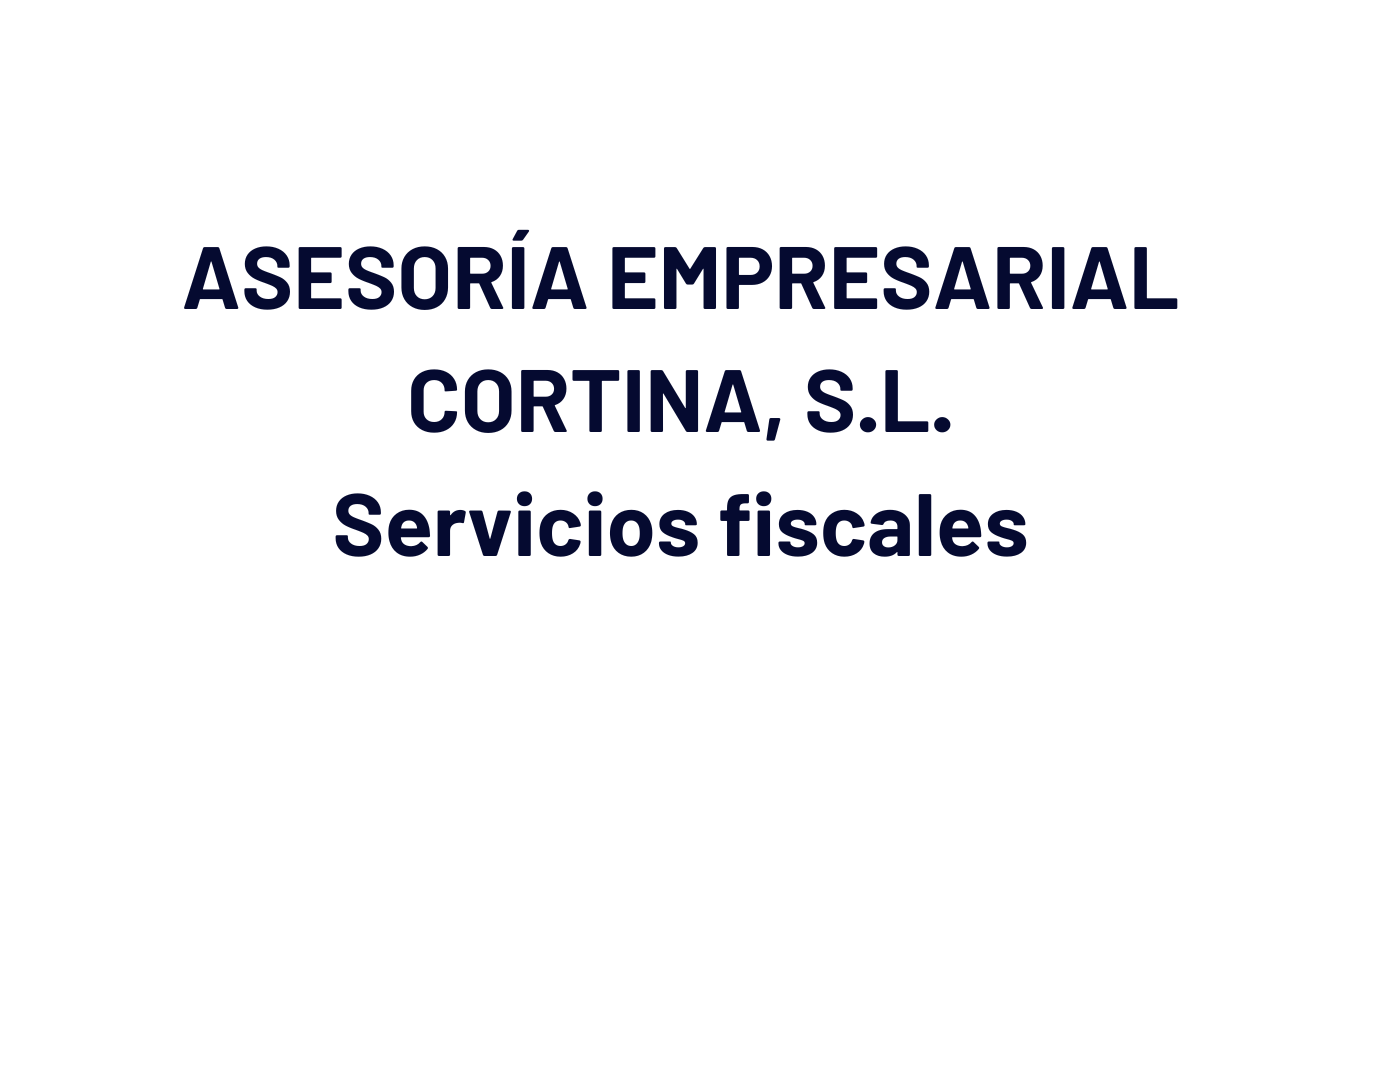 ASESORÍA EMPRESARIAL CORTINA, S.L.